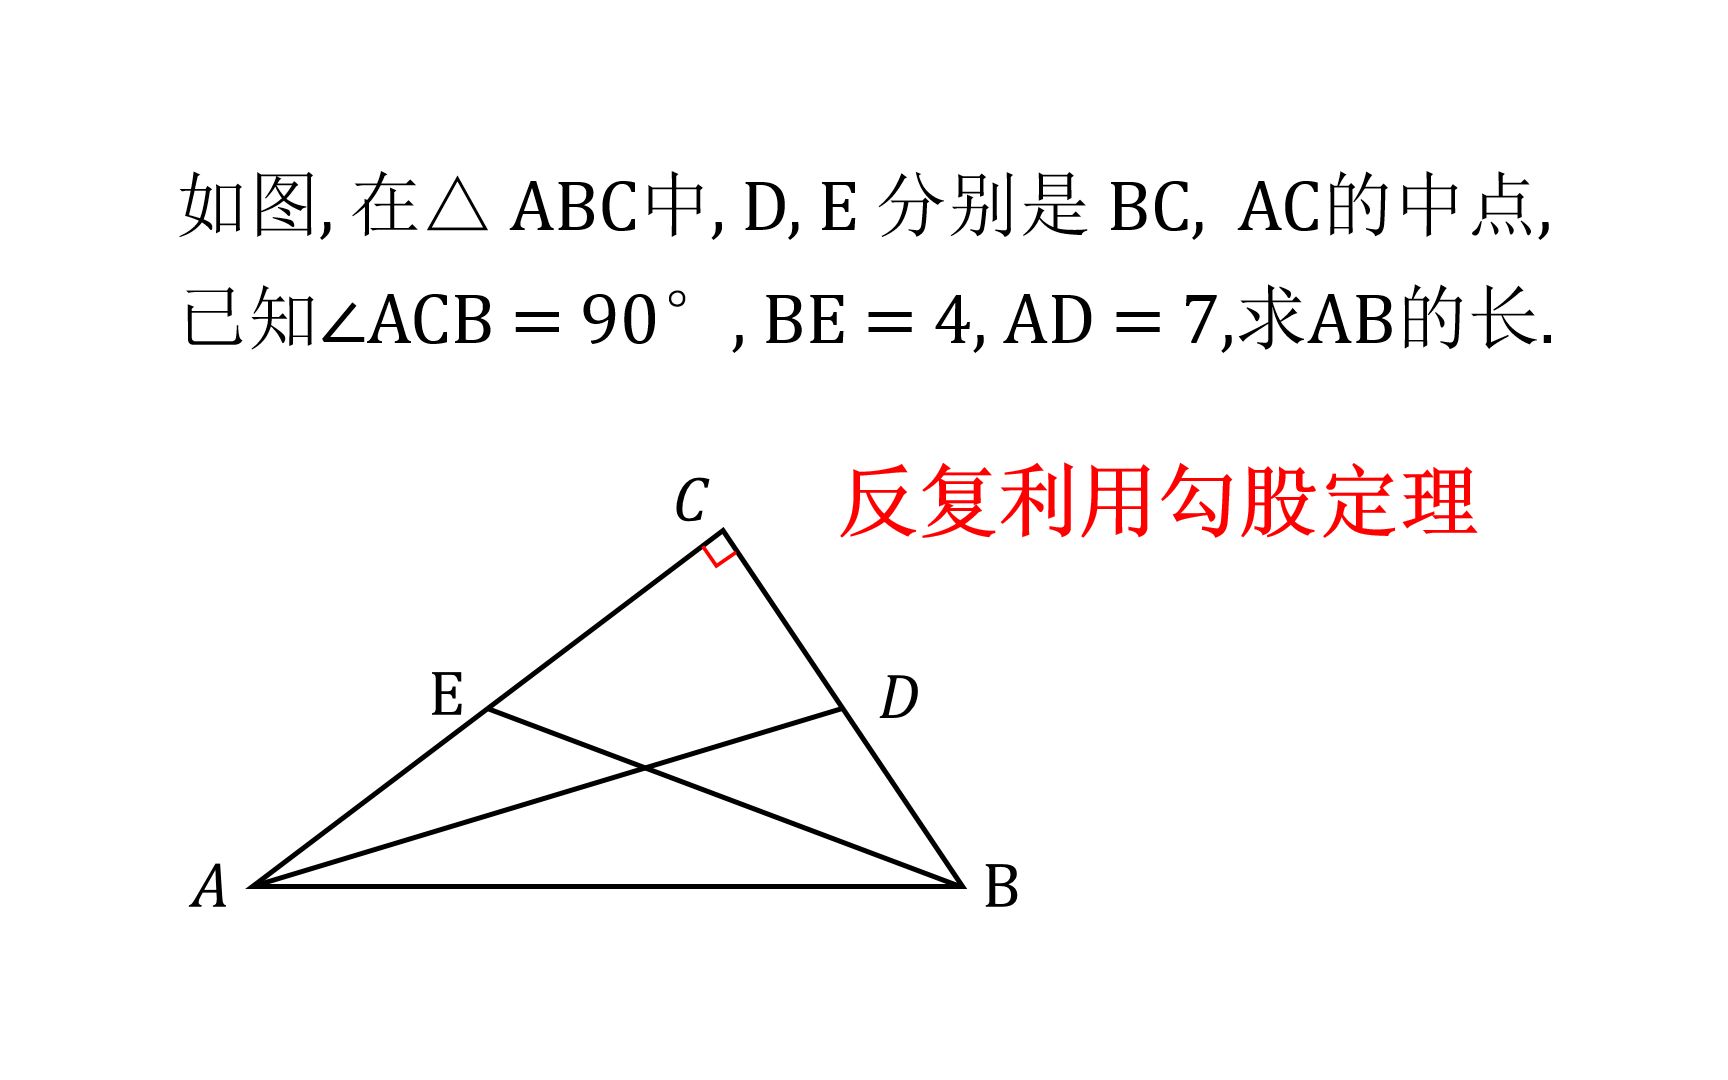 初中数学 直角三角形中 利用中点和勾股定理 构造方程式求解电影